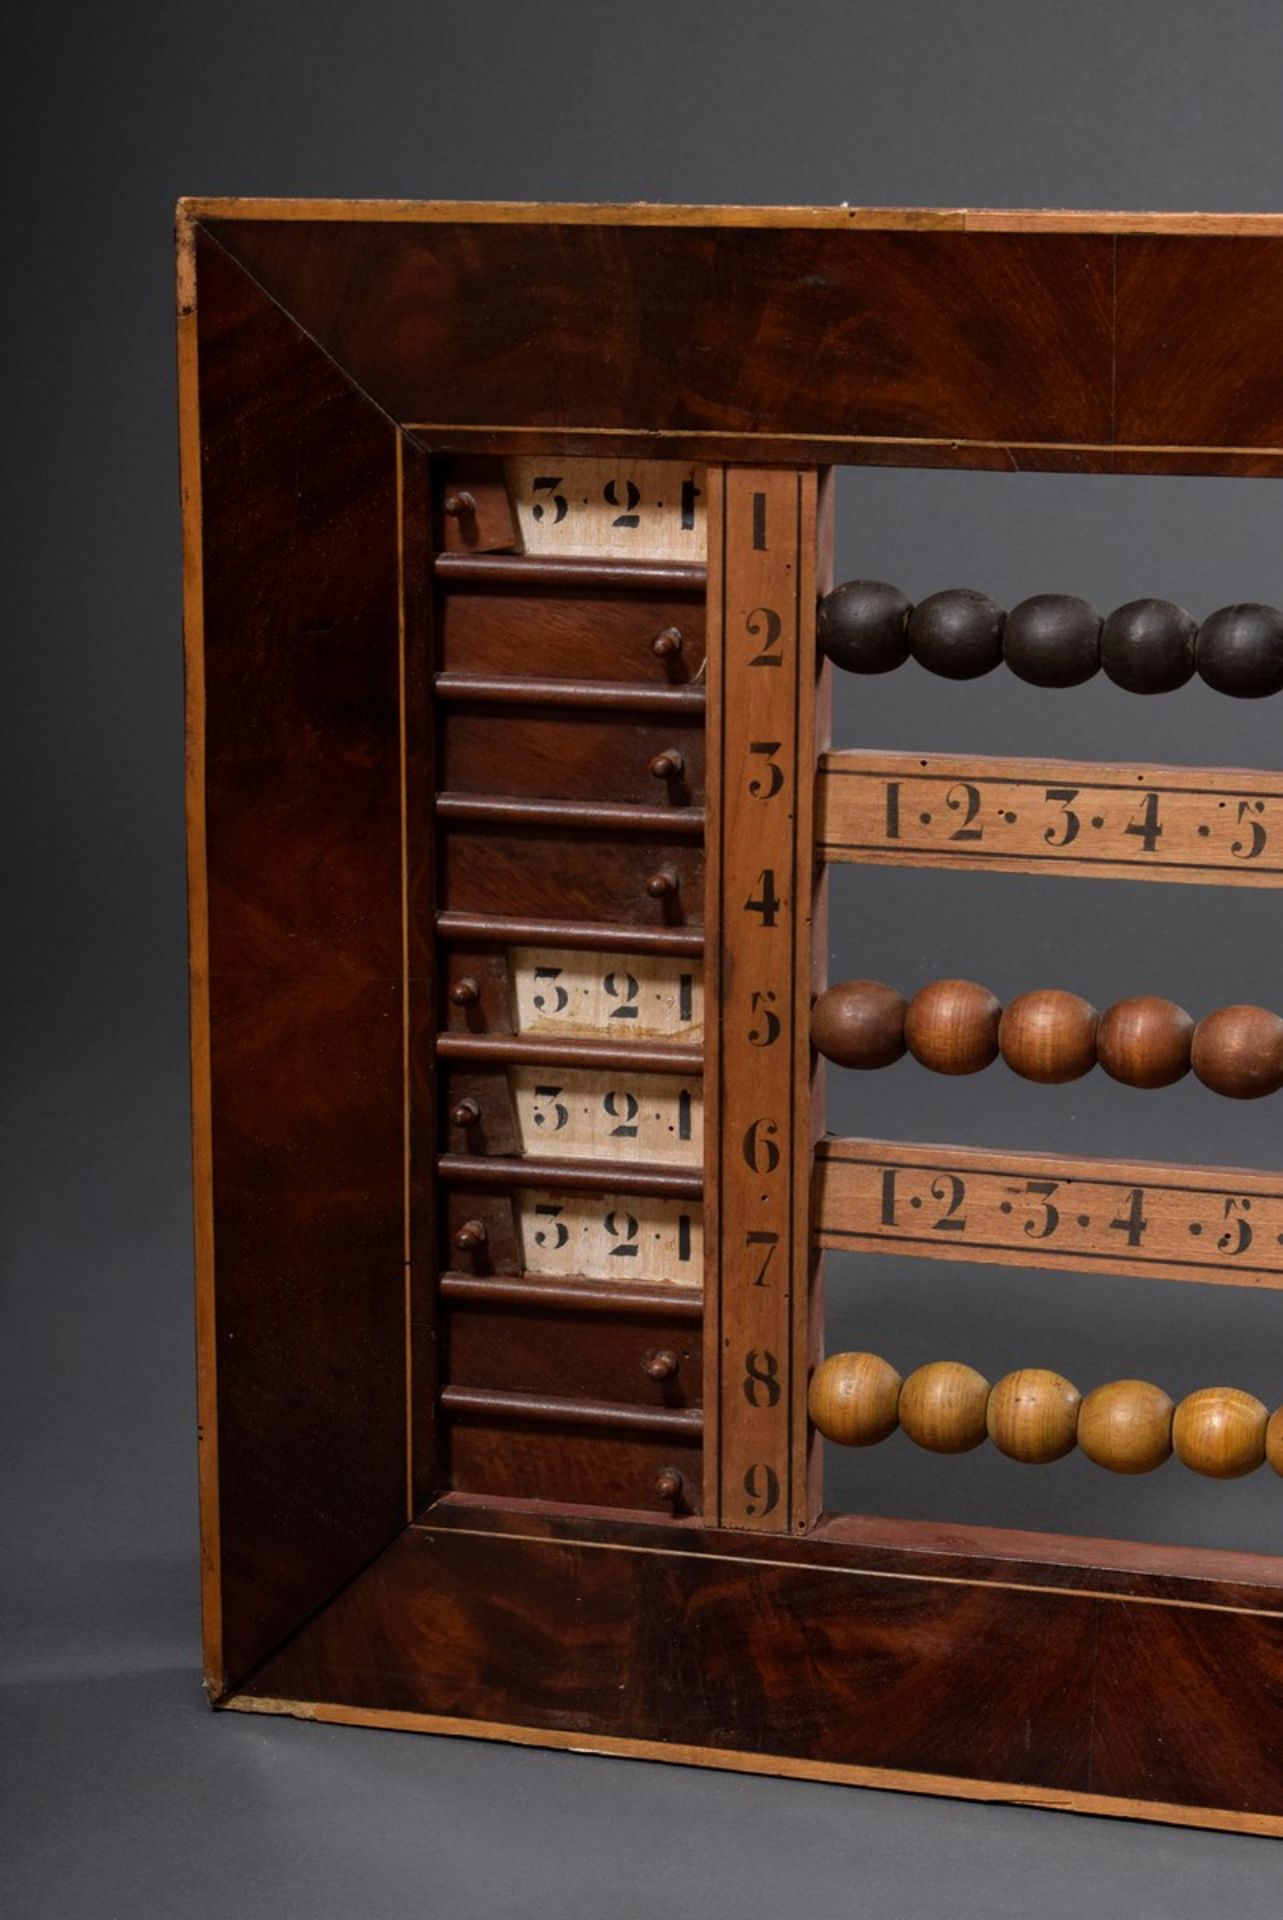 Zähltafel/Scoreboard mit Holzperlen (wohl für Billard/Snooker), Mahagonifurnier - Bild 2 aus 5